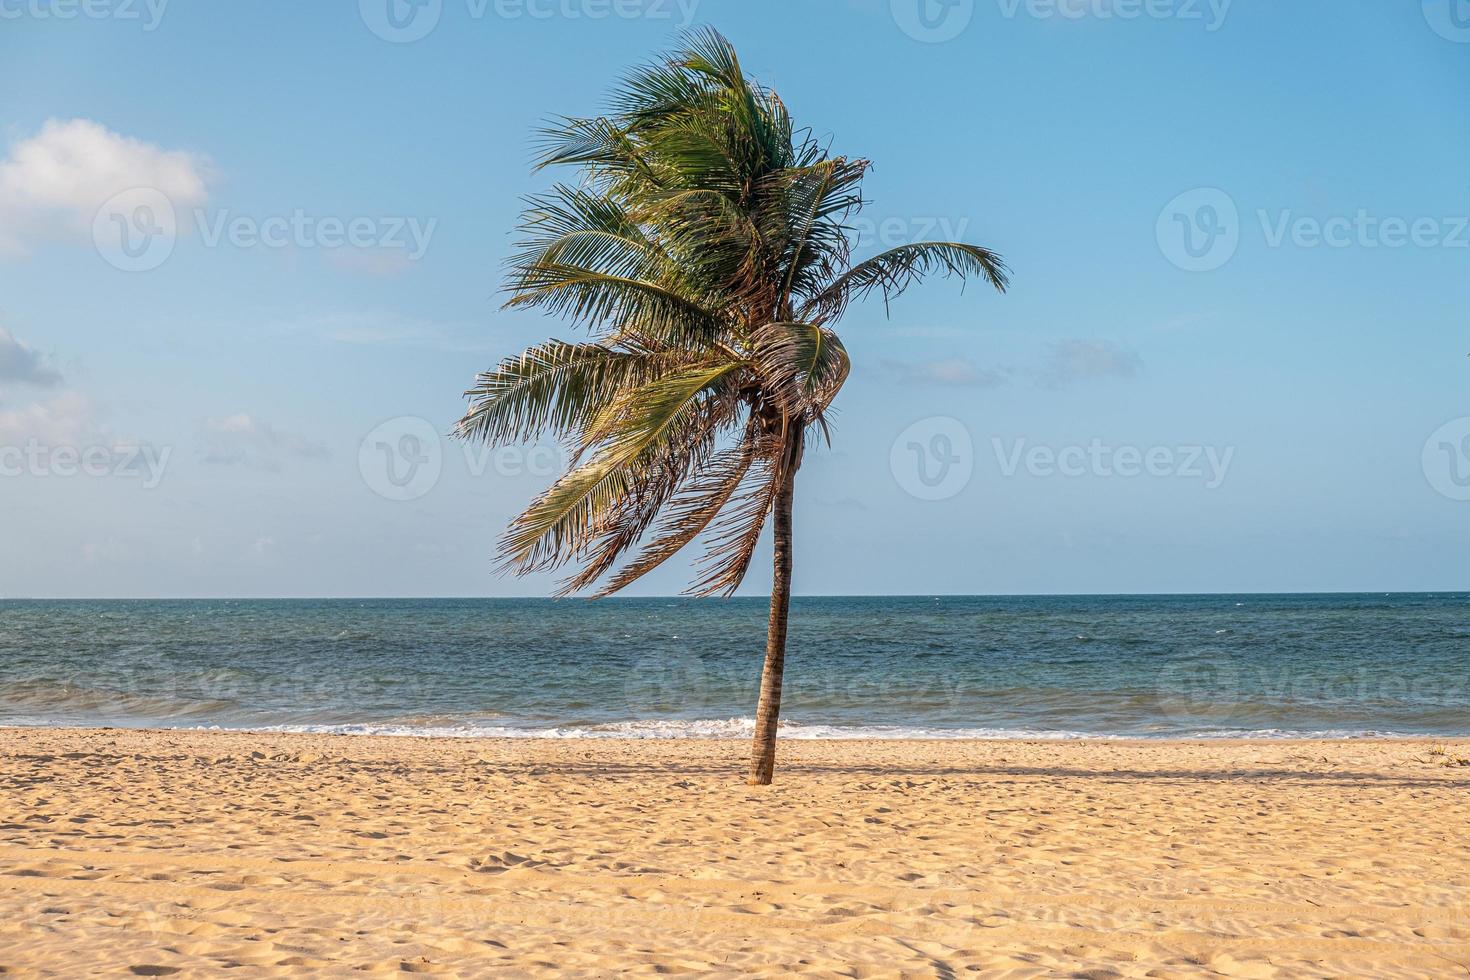 praia do cumbuco, lugar famoso perto de fortaleza, ceara, brasil. praia do cumbuco cheia de praticantes de kitesurf. lugares mais populares para a prática de kitesurf no brasil, os ventos são bons o ano todo. foto